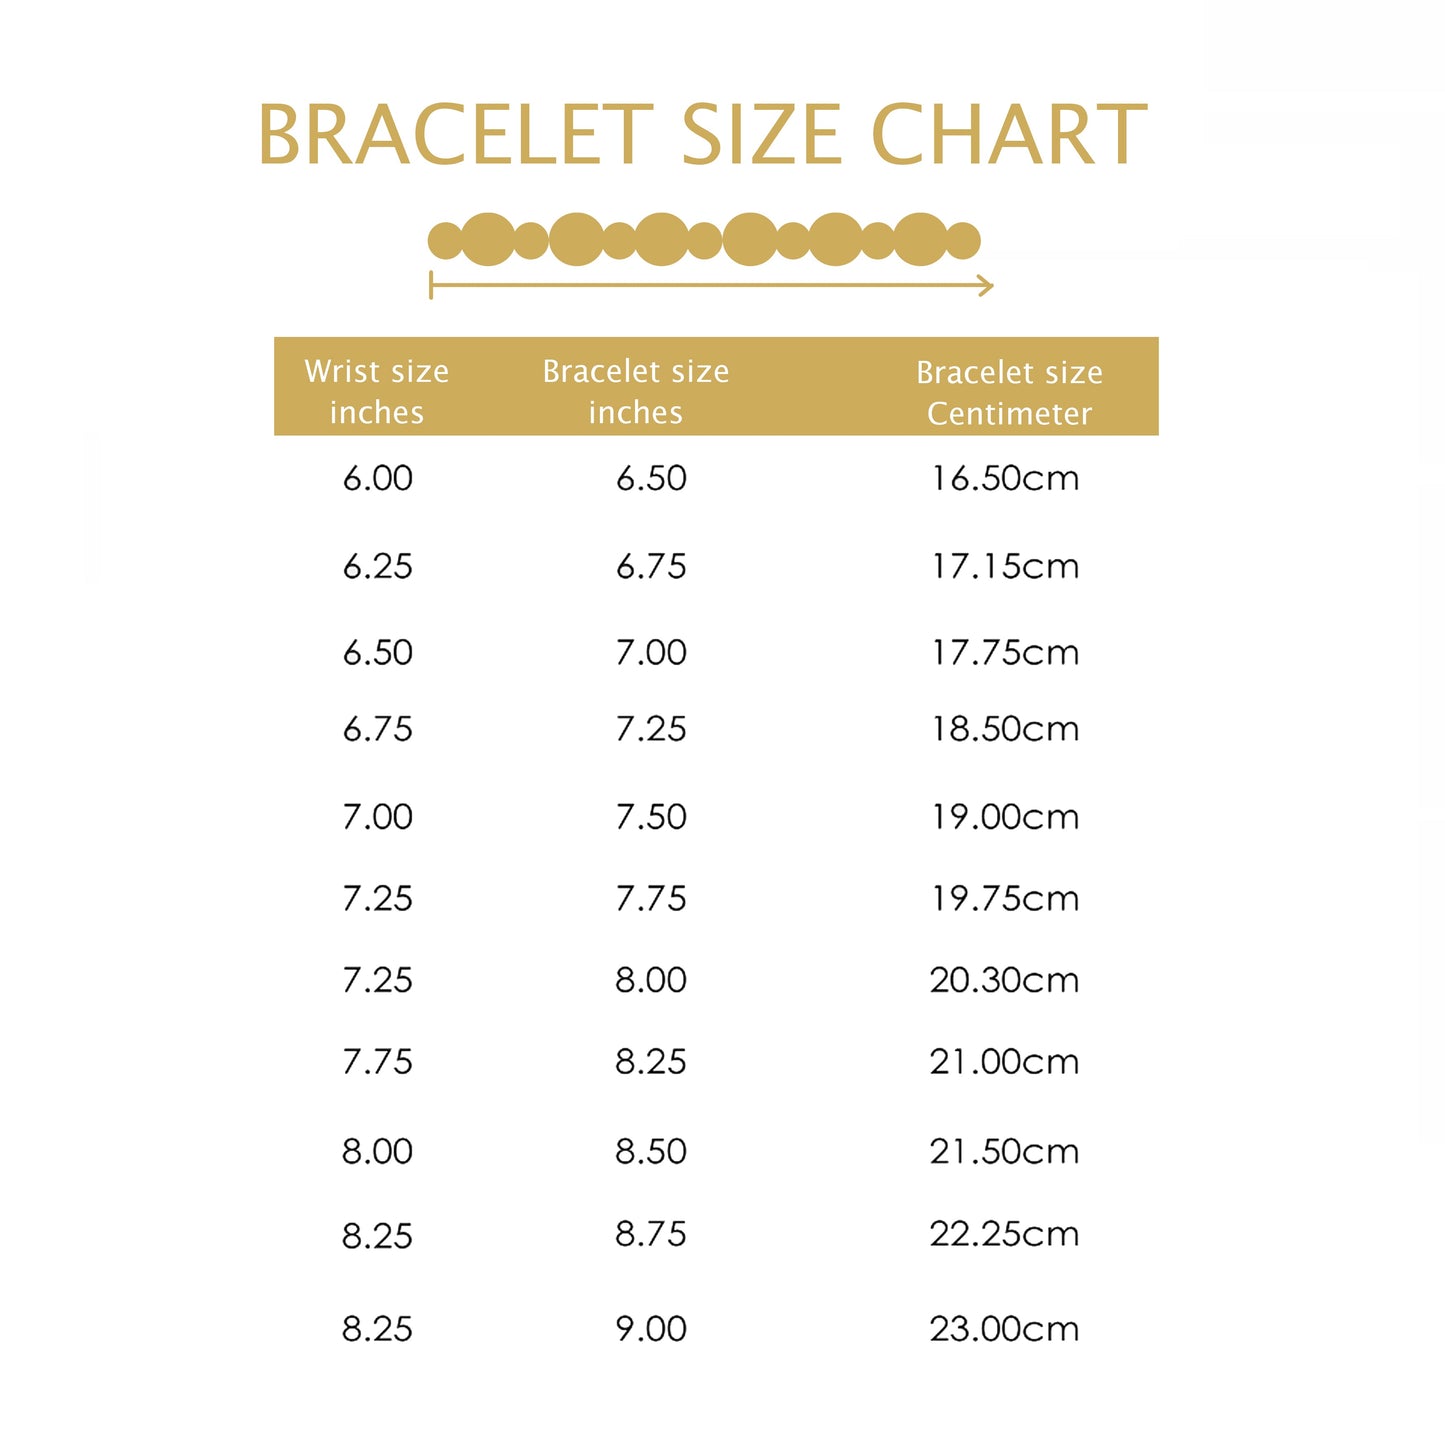 7.5" Flat Byzantine Bracelet